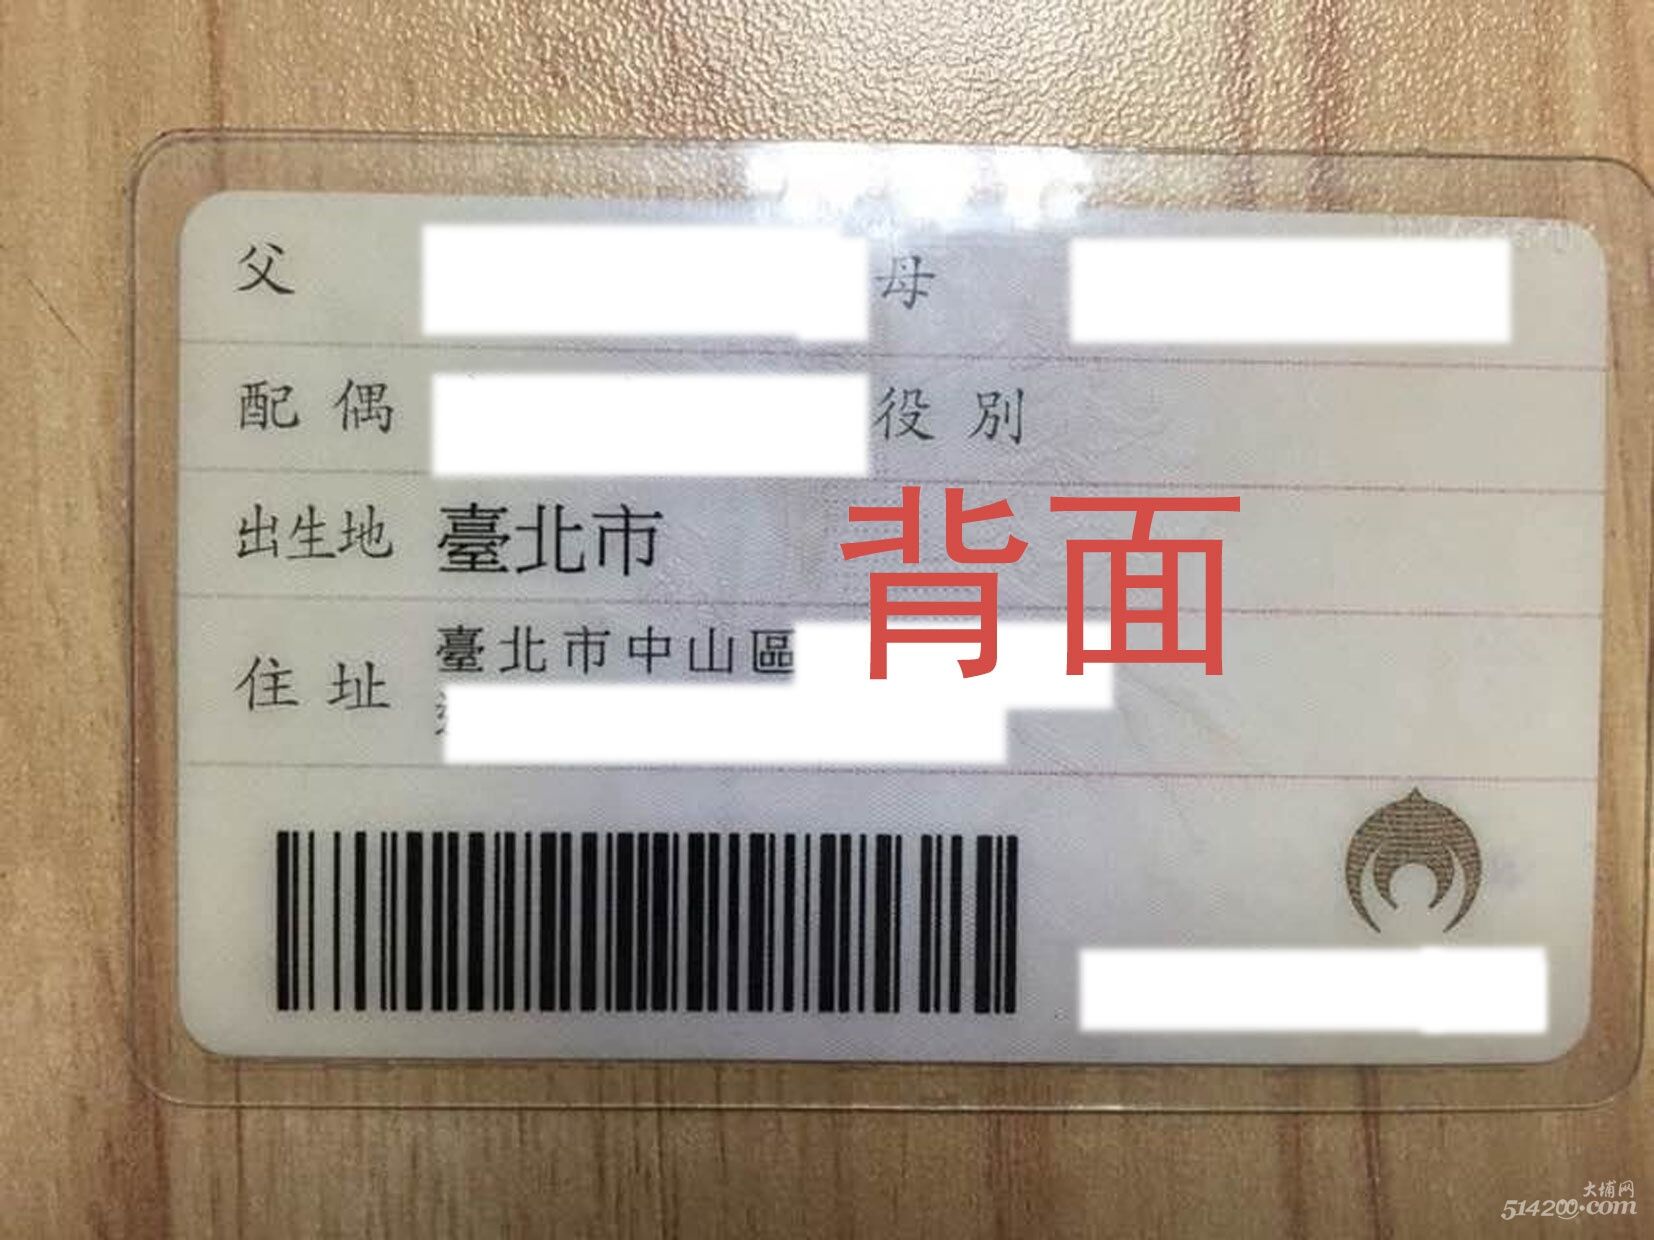 台湾身份证识别的ocr技术 - 知乎